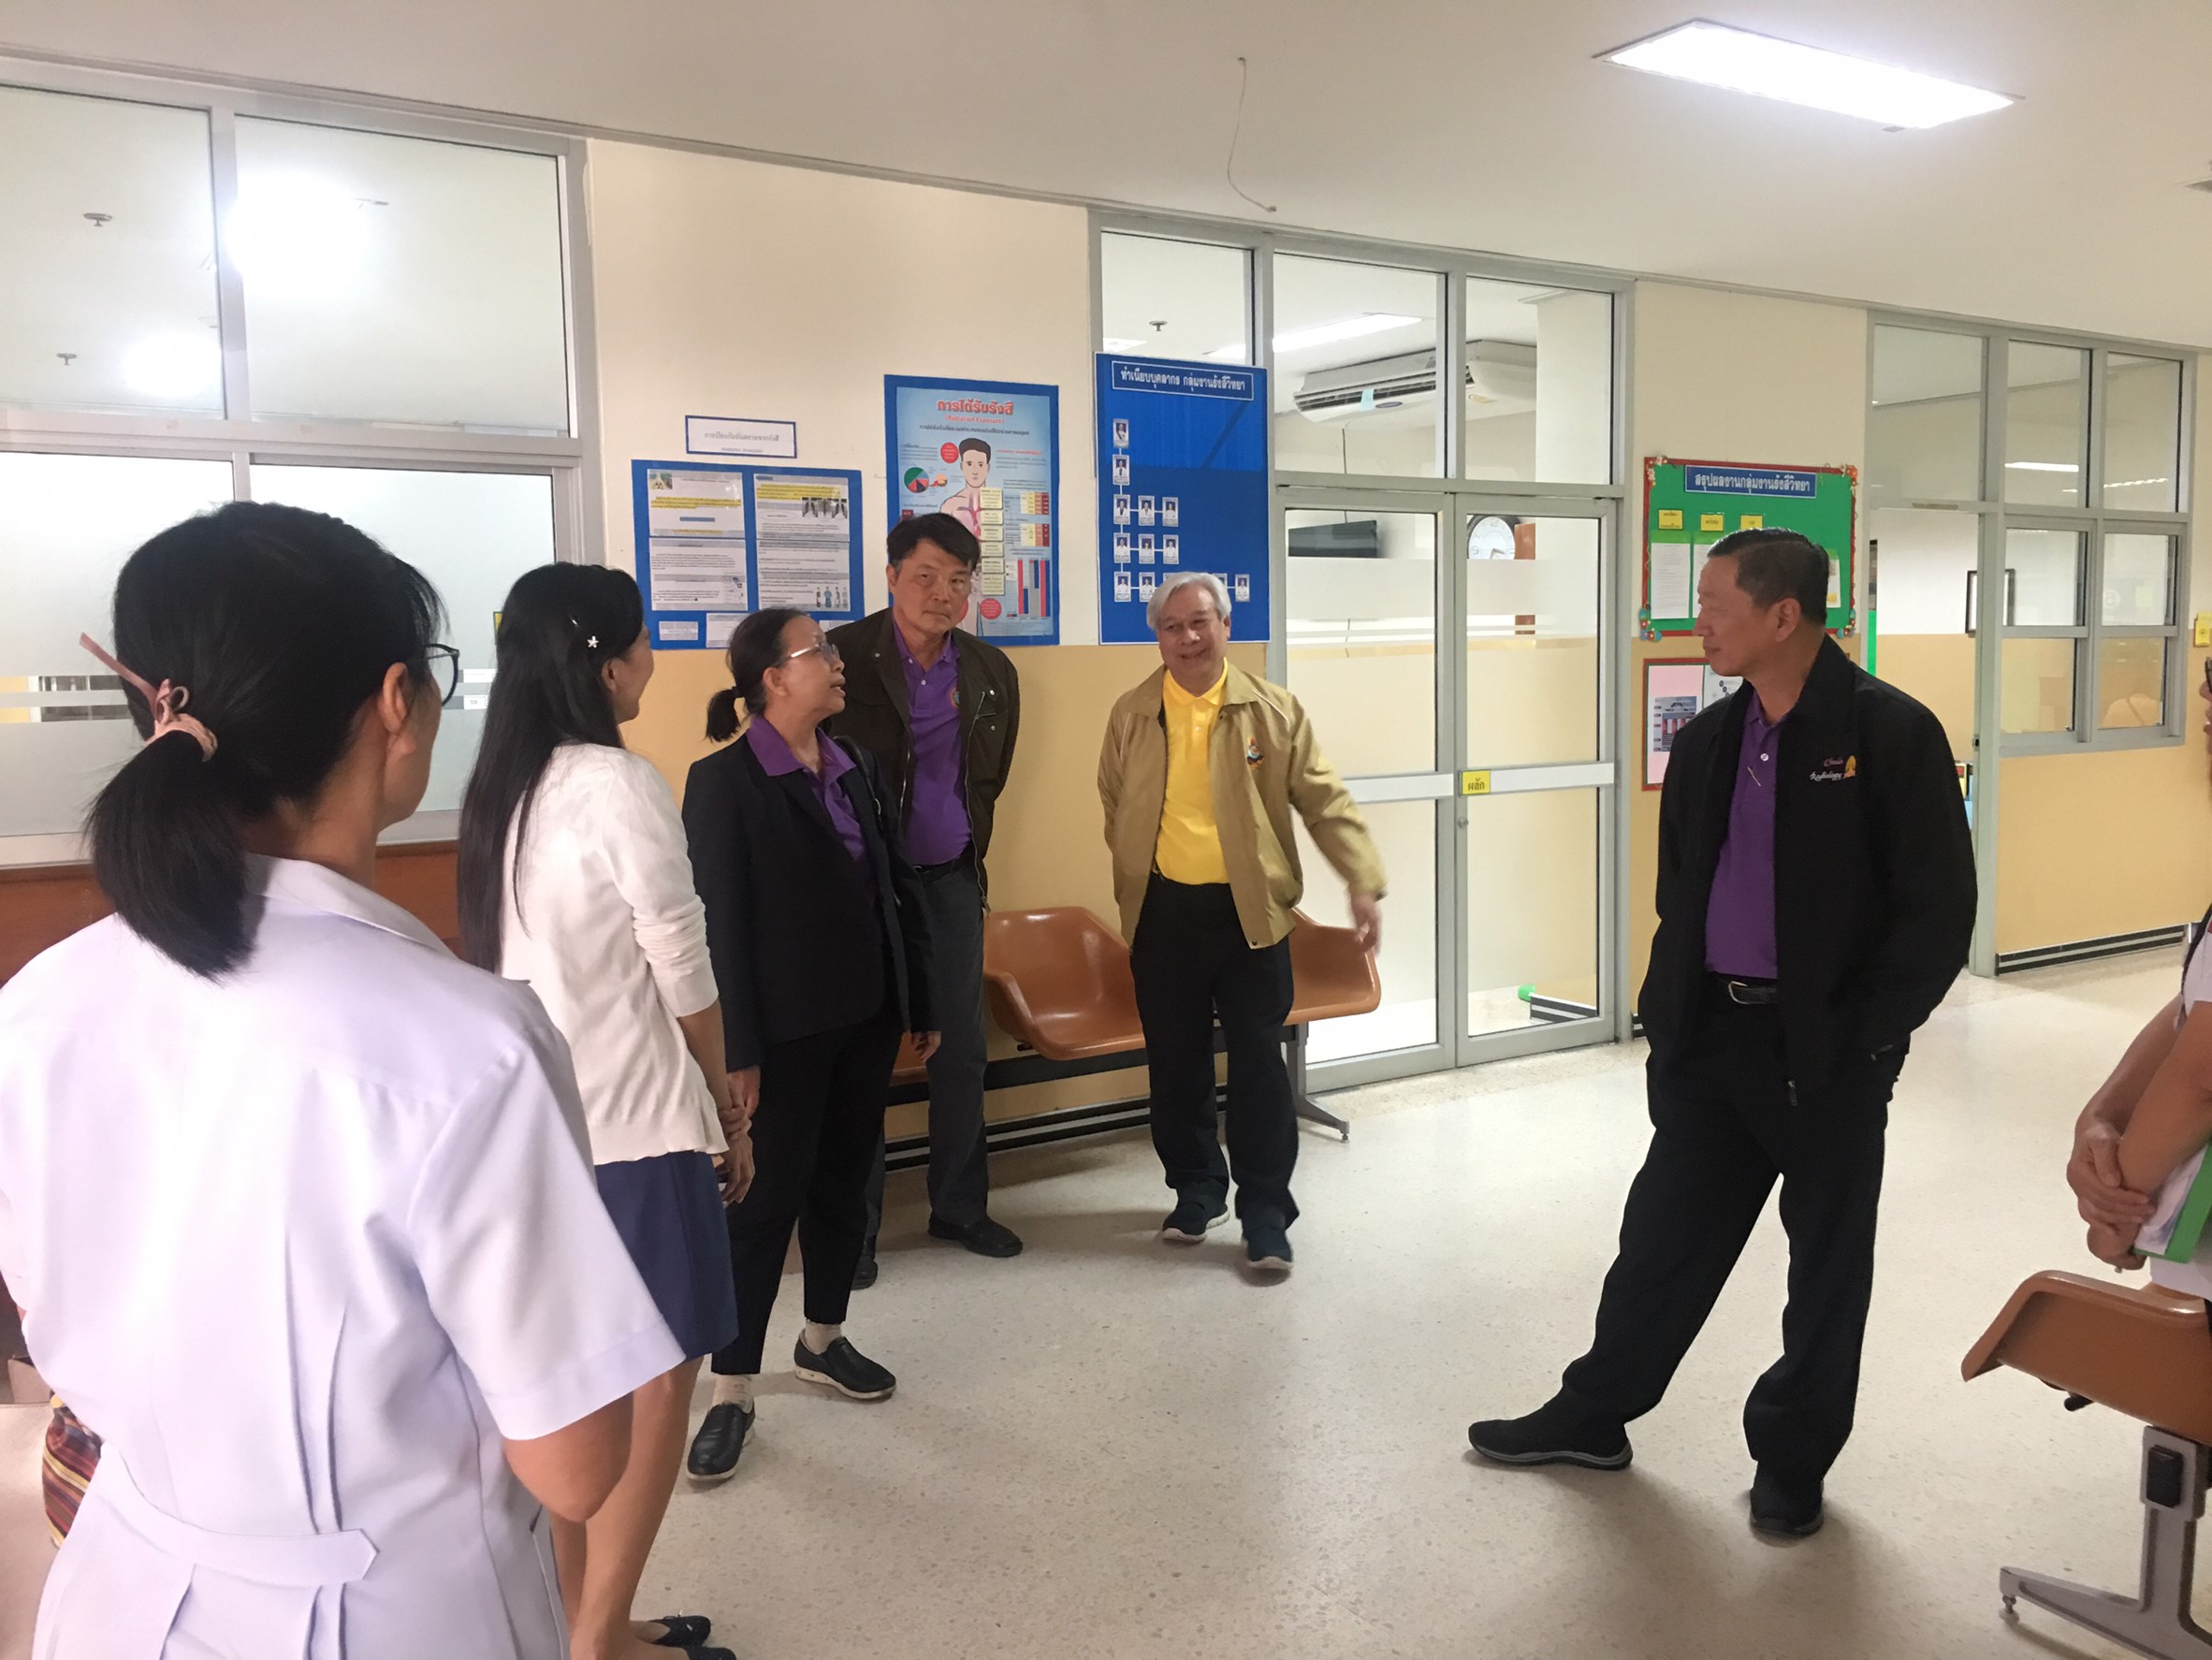 ประชุมวิชาการร่วมกับรังสีการแพทย์แห่งประเทศไทย ครั้งที่17 27-29 พ.ย. - พร้อมเข้าเยี่ยมและให้กำลังใจหน่วยงานรังสีวิทยาในพื้นที่จังหวัดอุบลราชธานีระหว่างวันที่ 25-26 พฤศจิกายน 2562 69